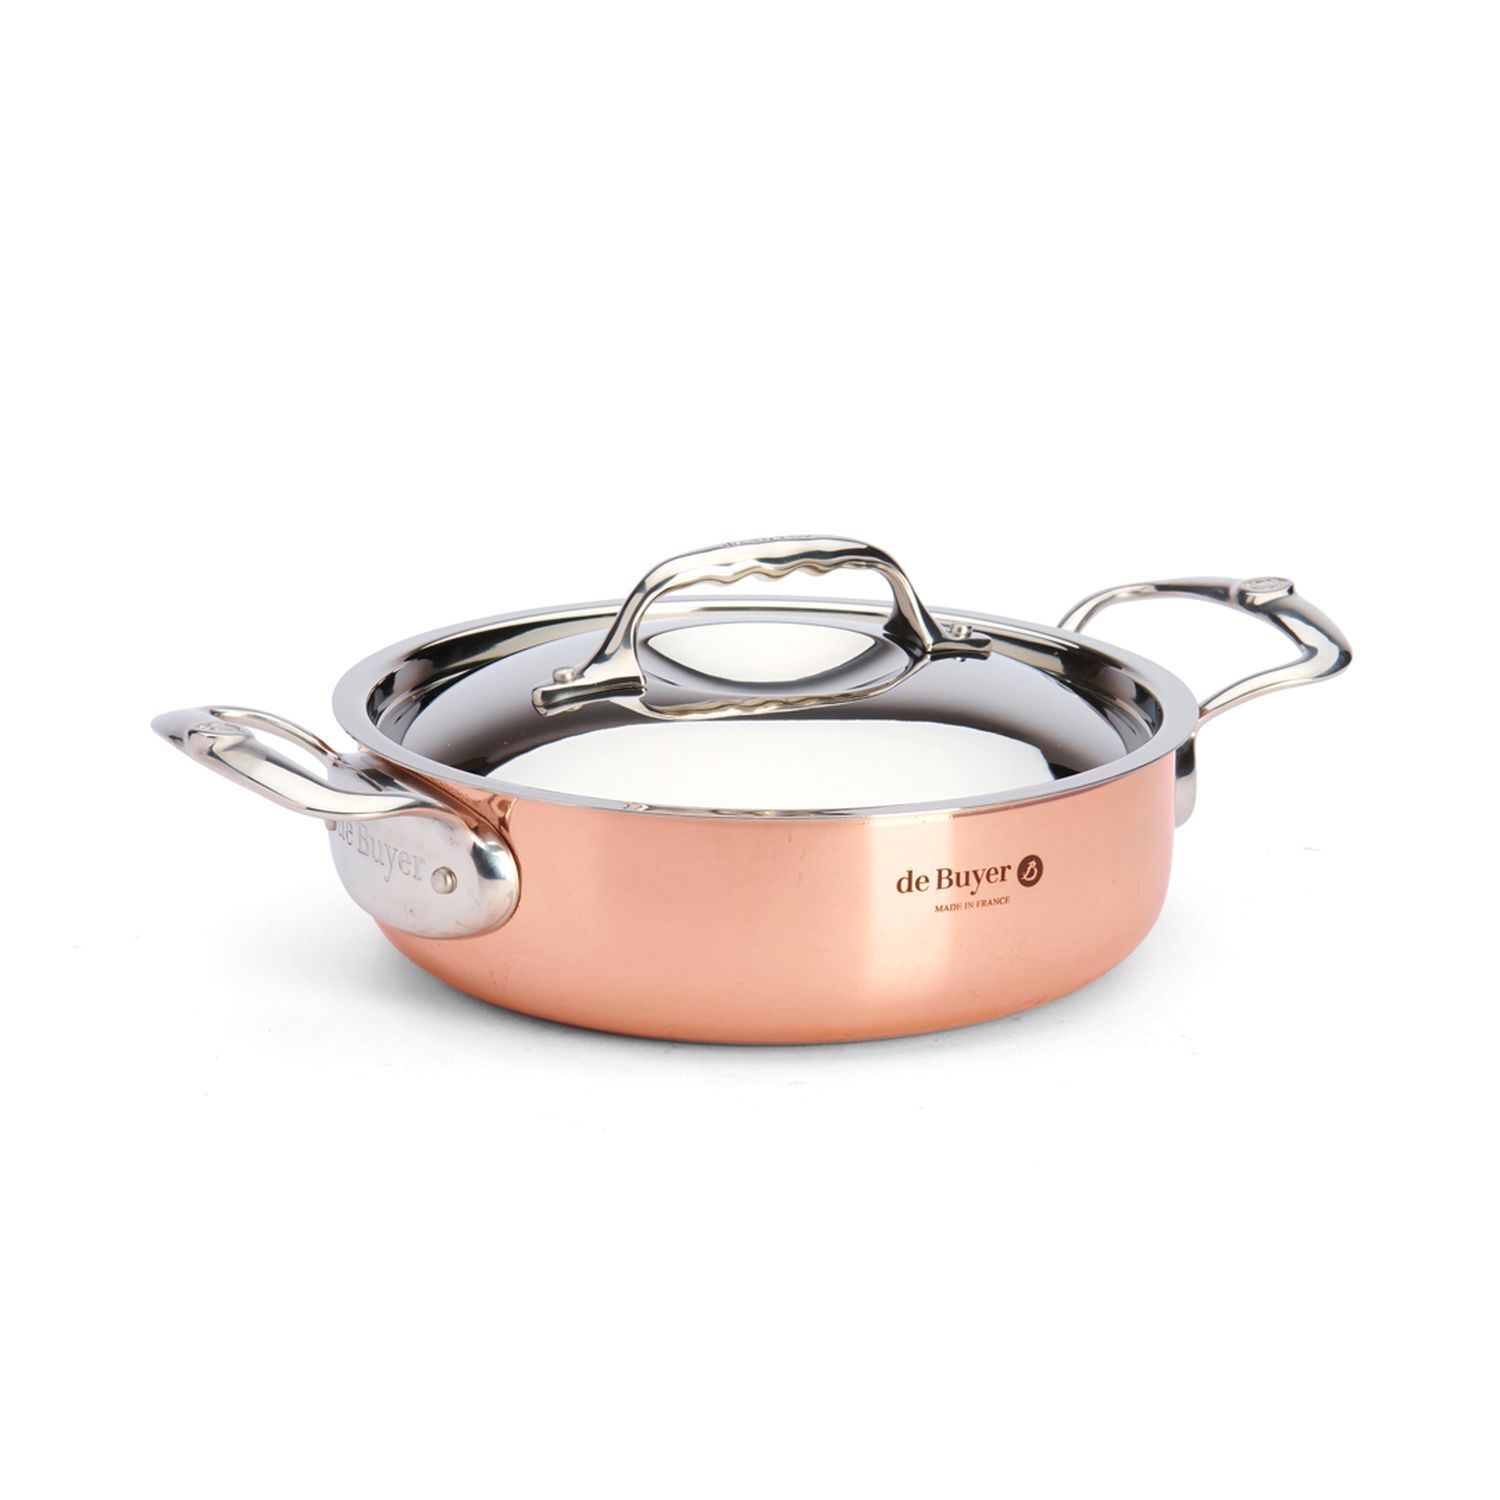 de Buyer French Copper Saucepan